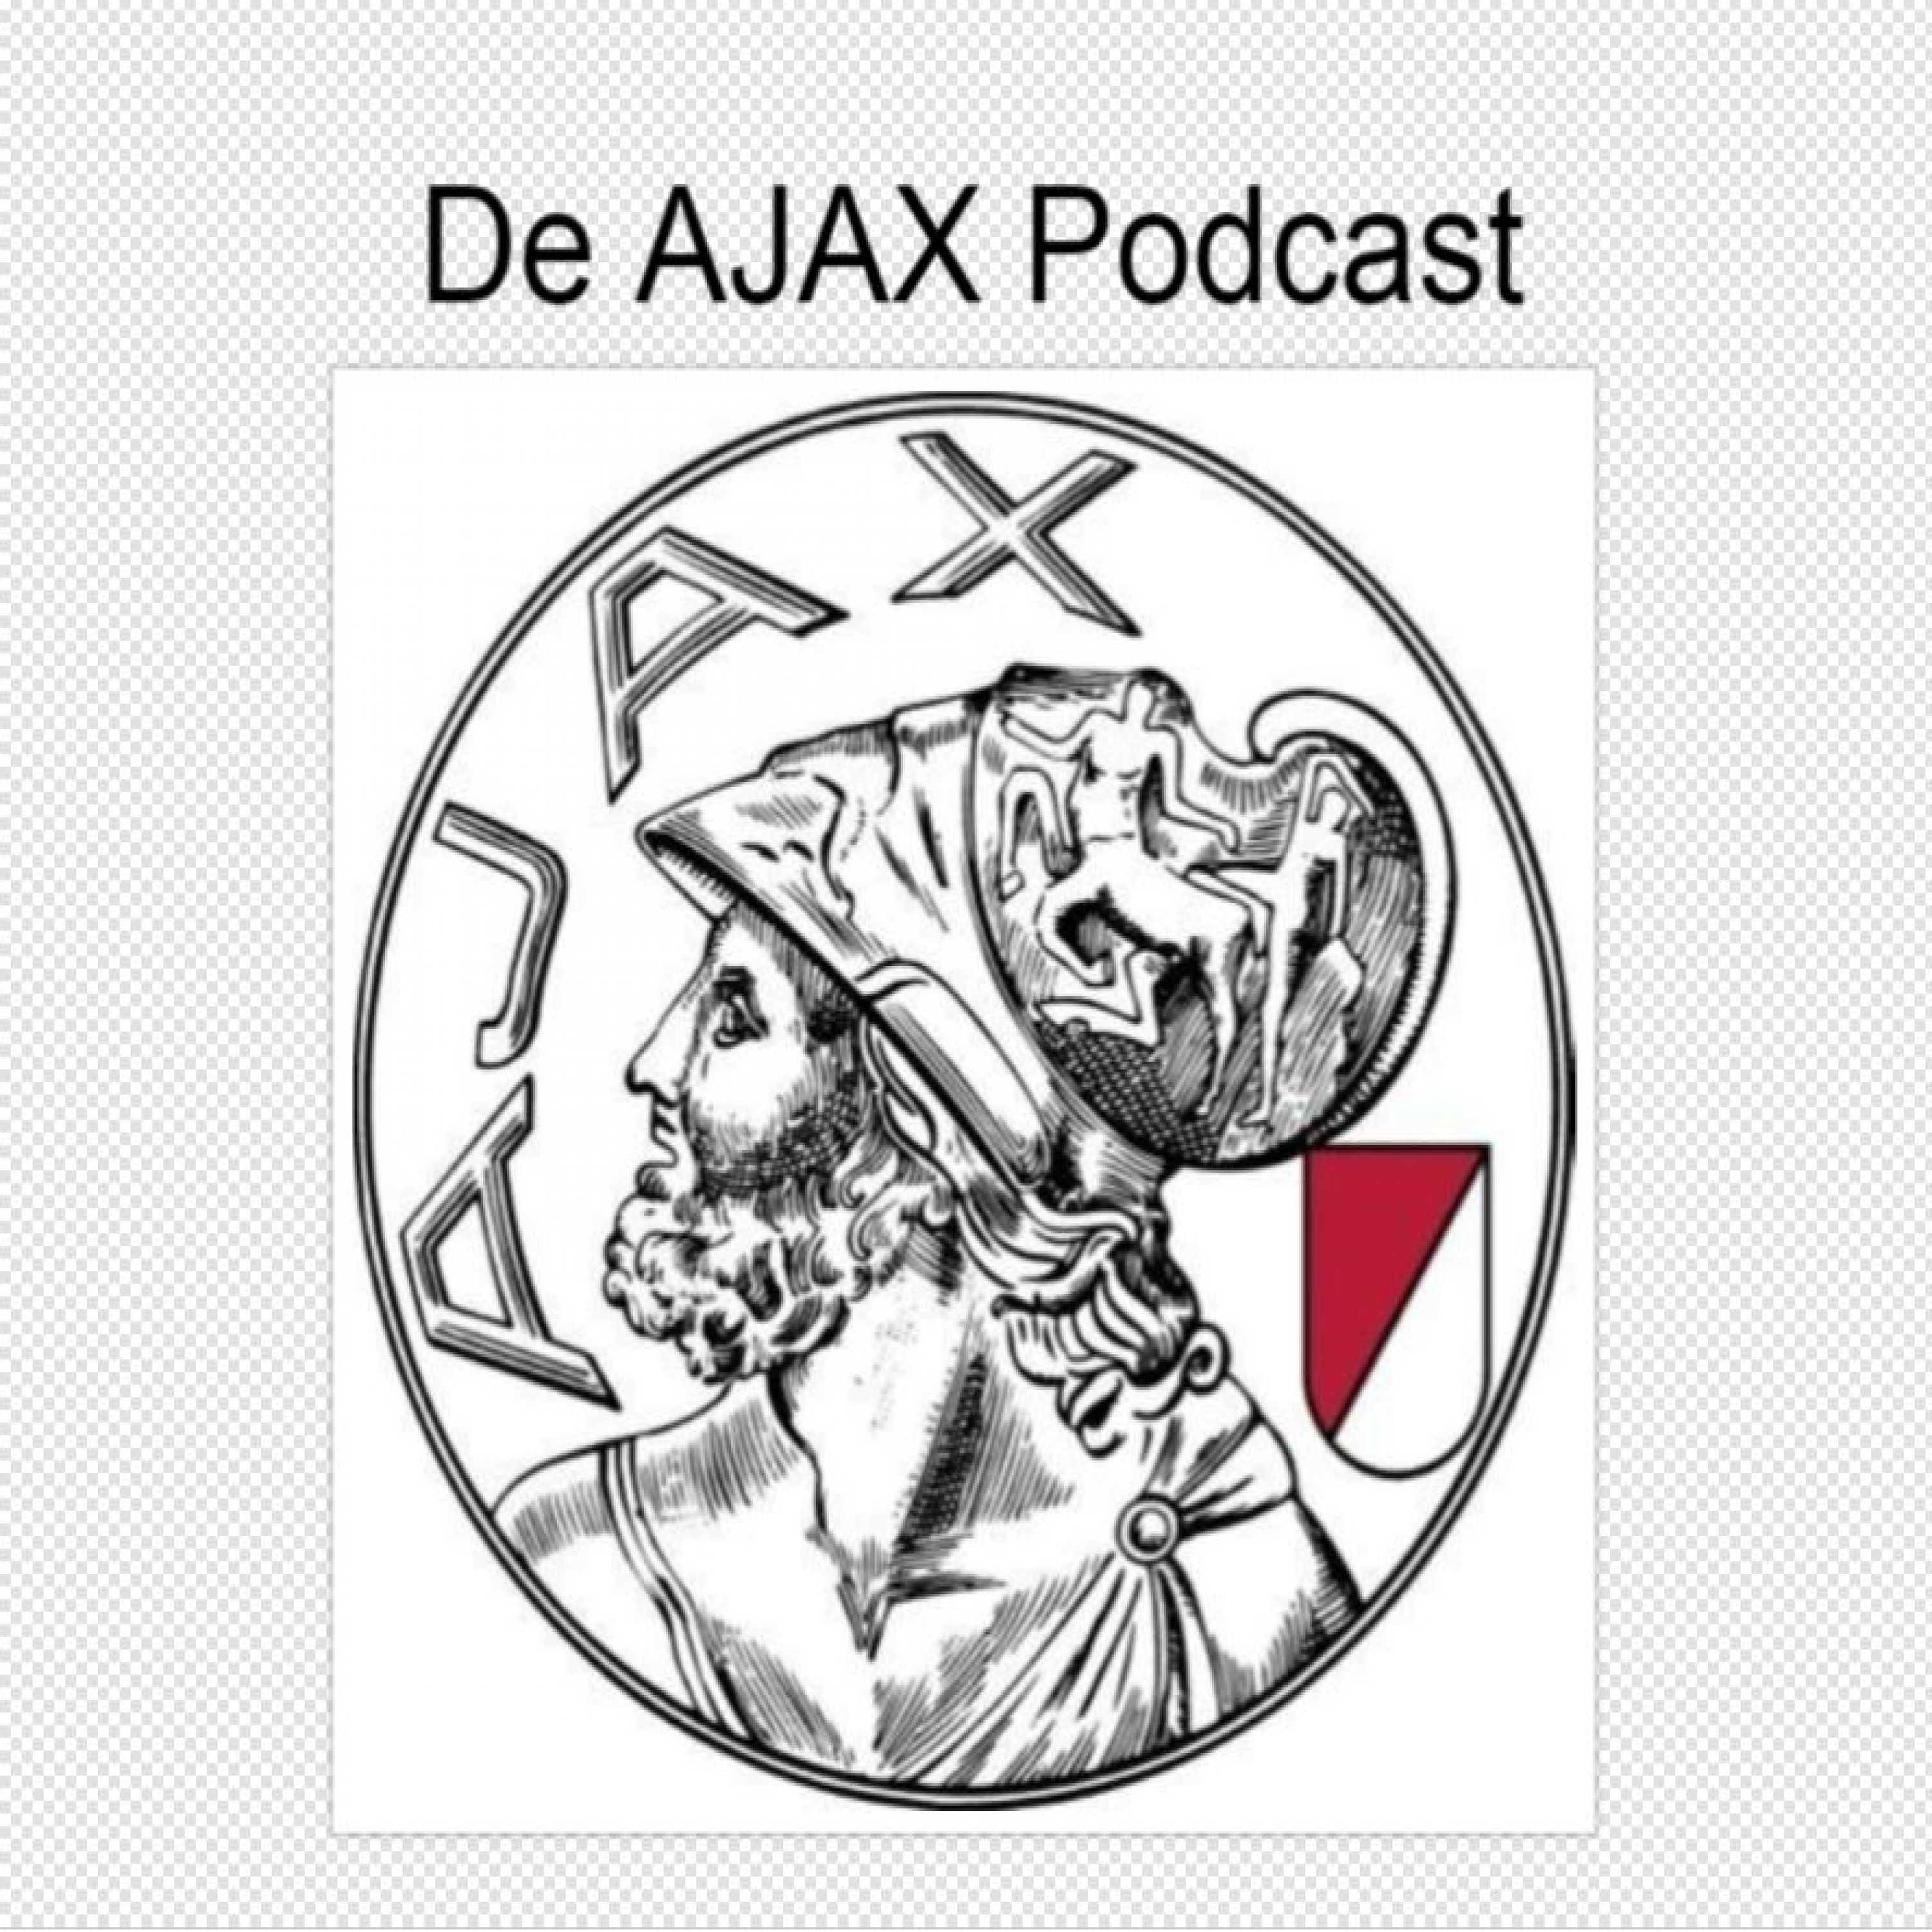 De Ajax Podcast